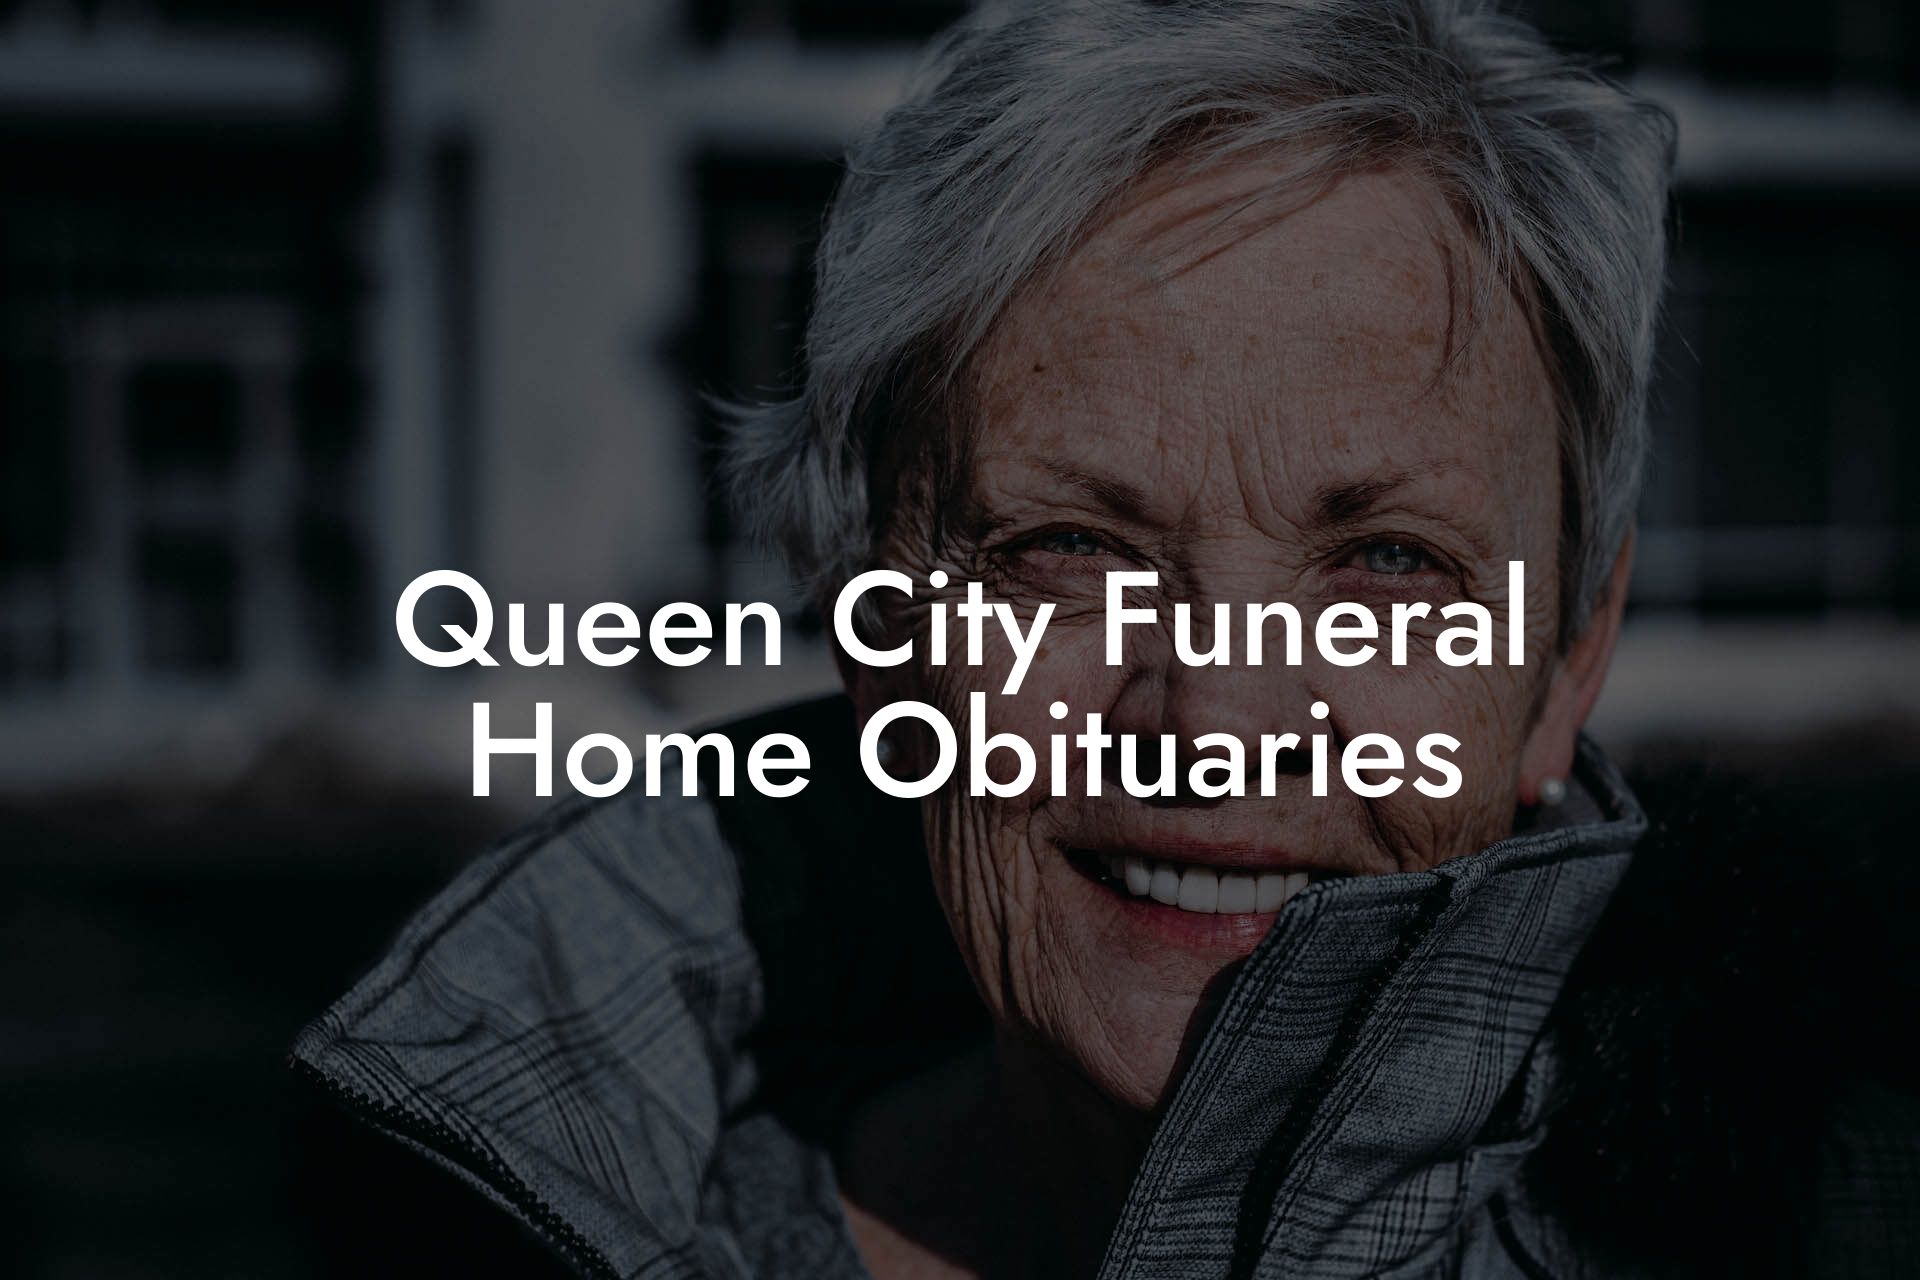 Queen City Funeral Home Obituaries